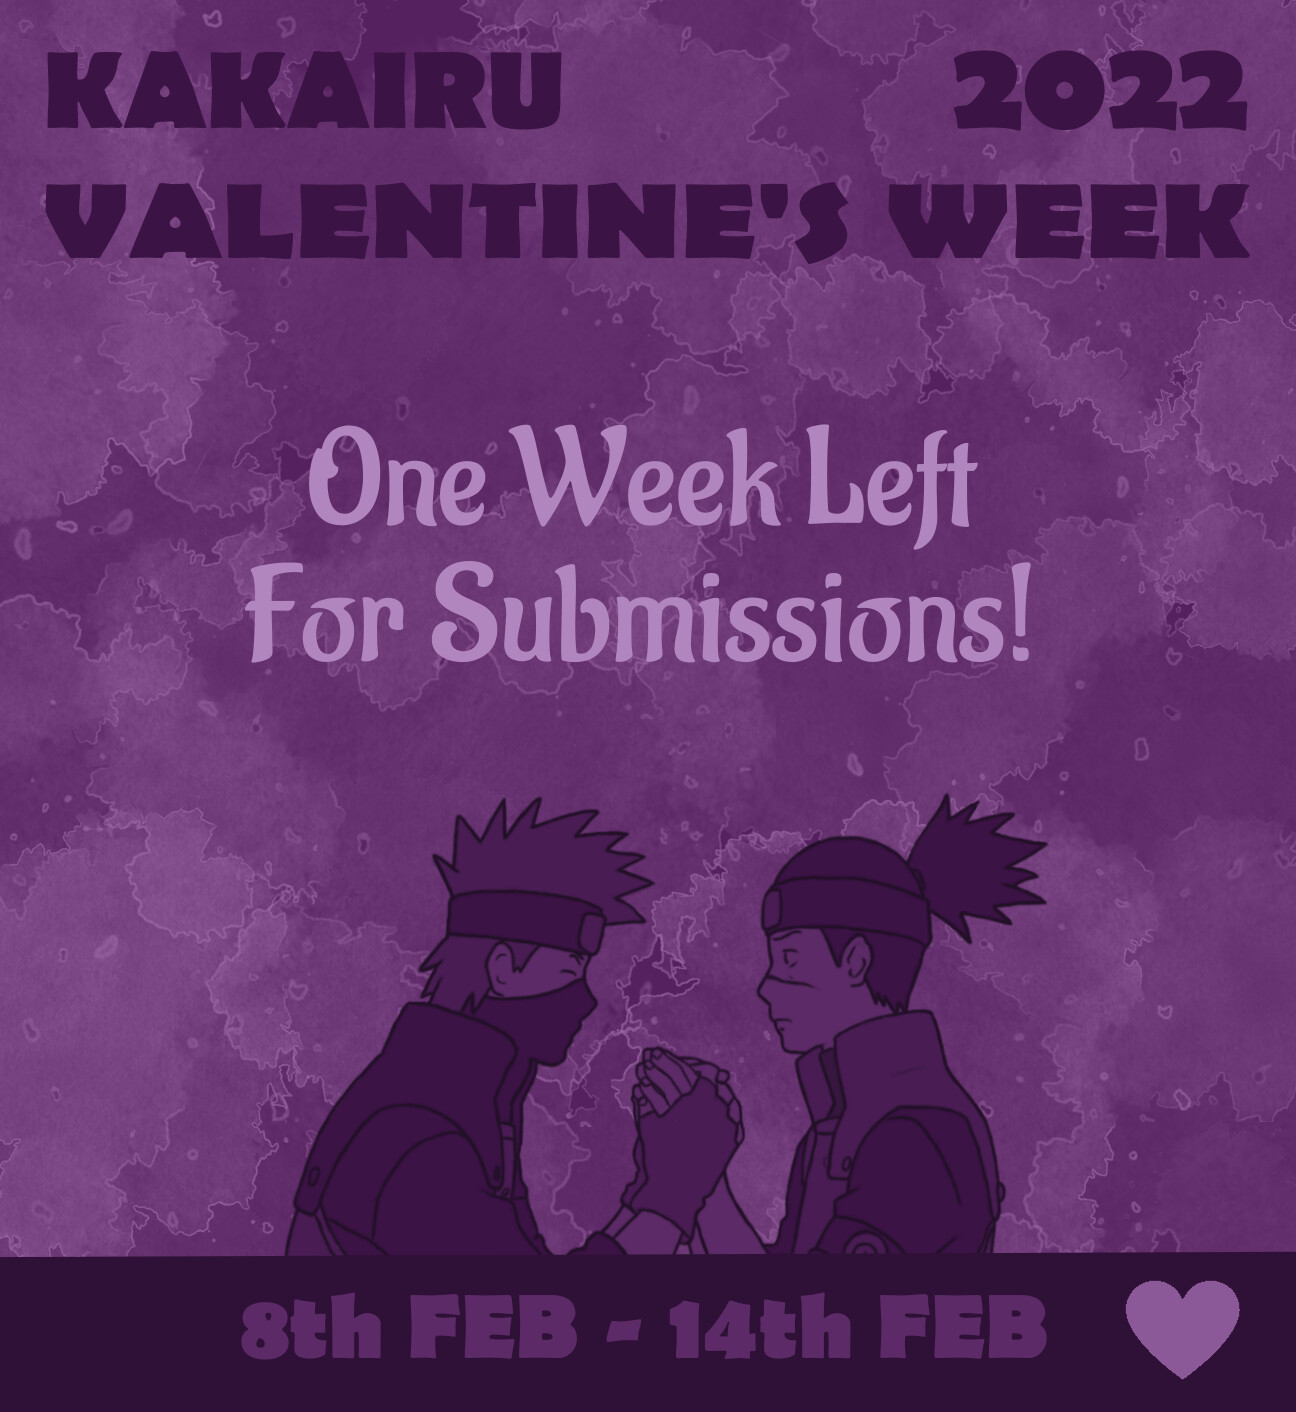 2022 valentine's week one week